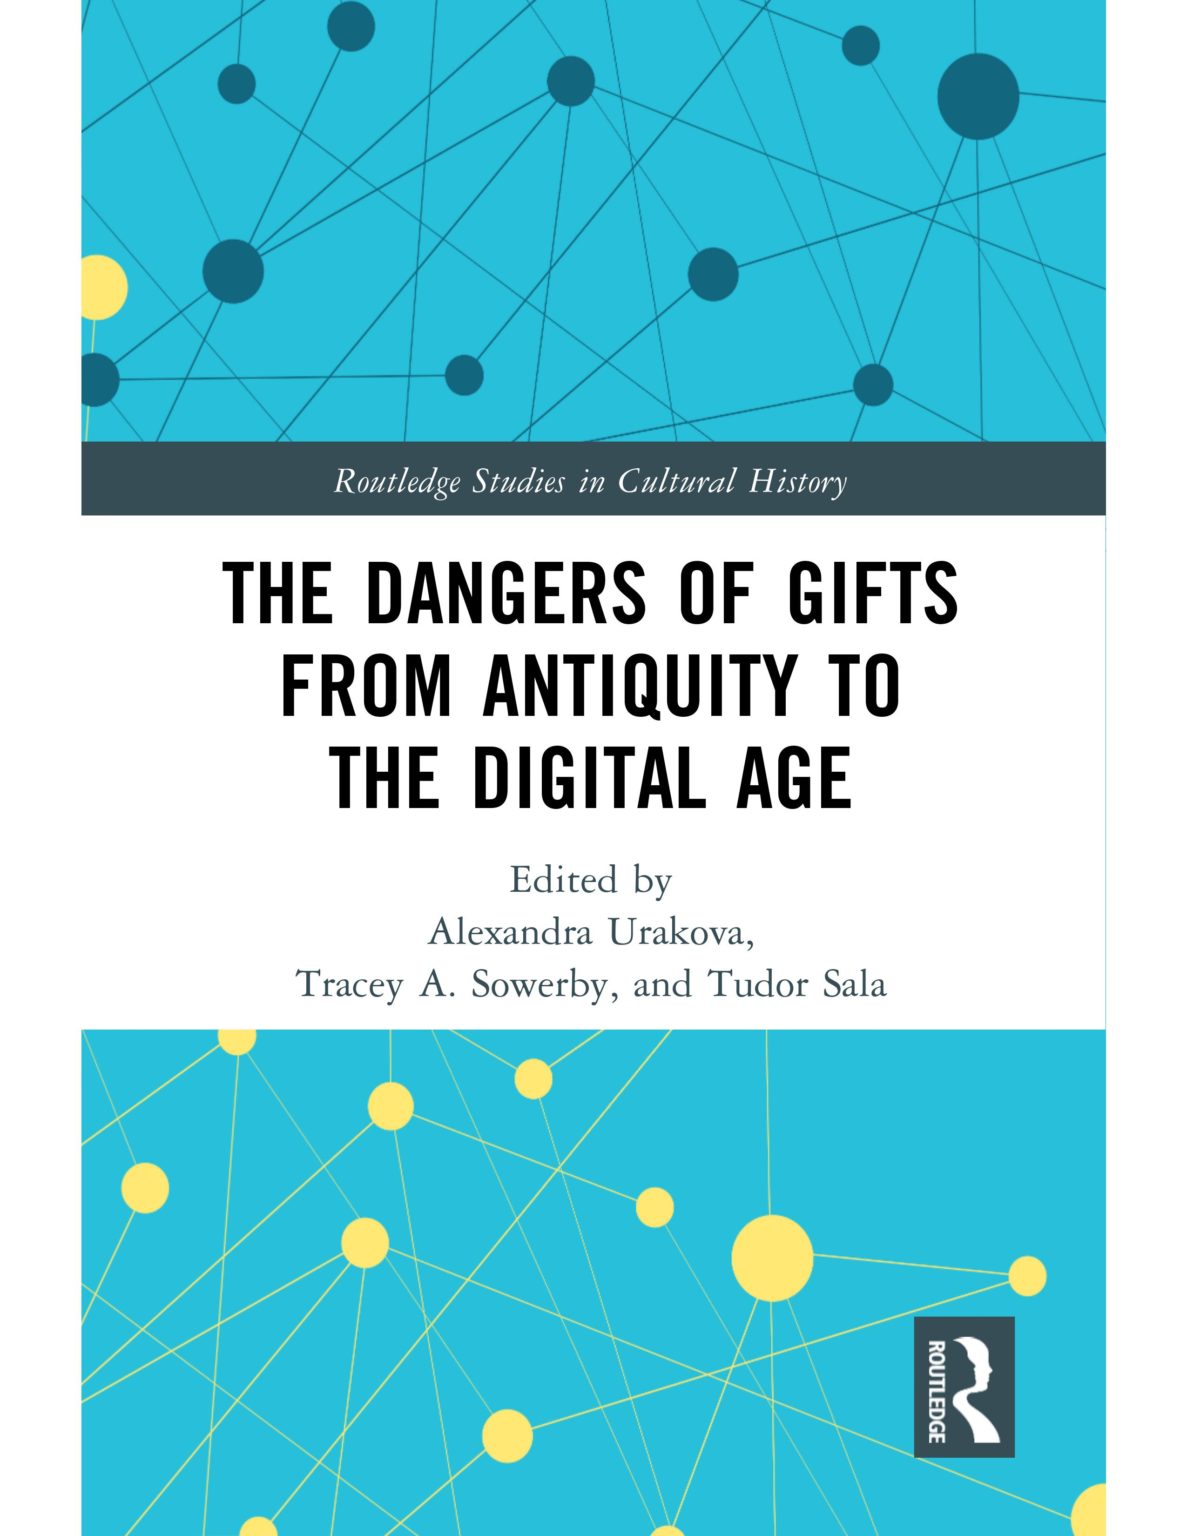 Tanulmánykötet az ajándékozás veszélyeiről – az antikvitástól a digitális korig